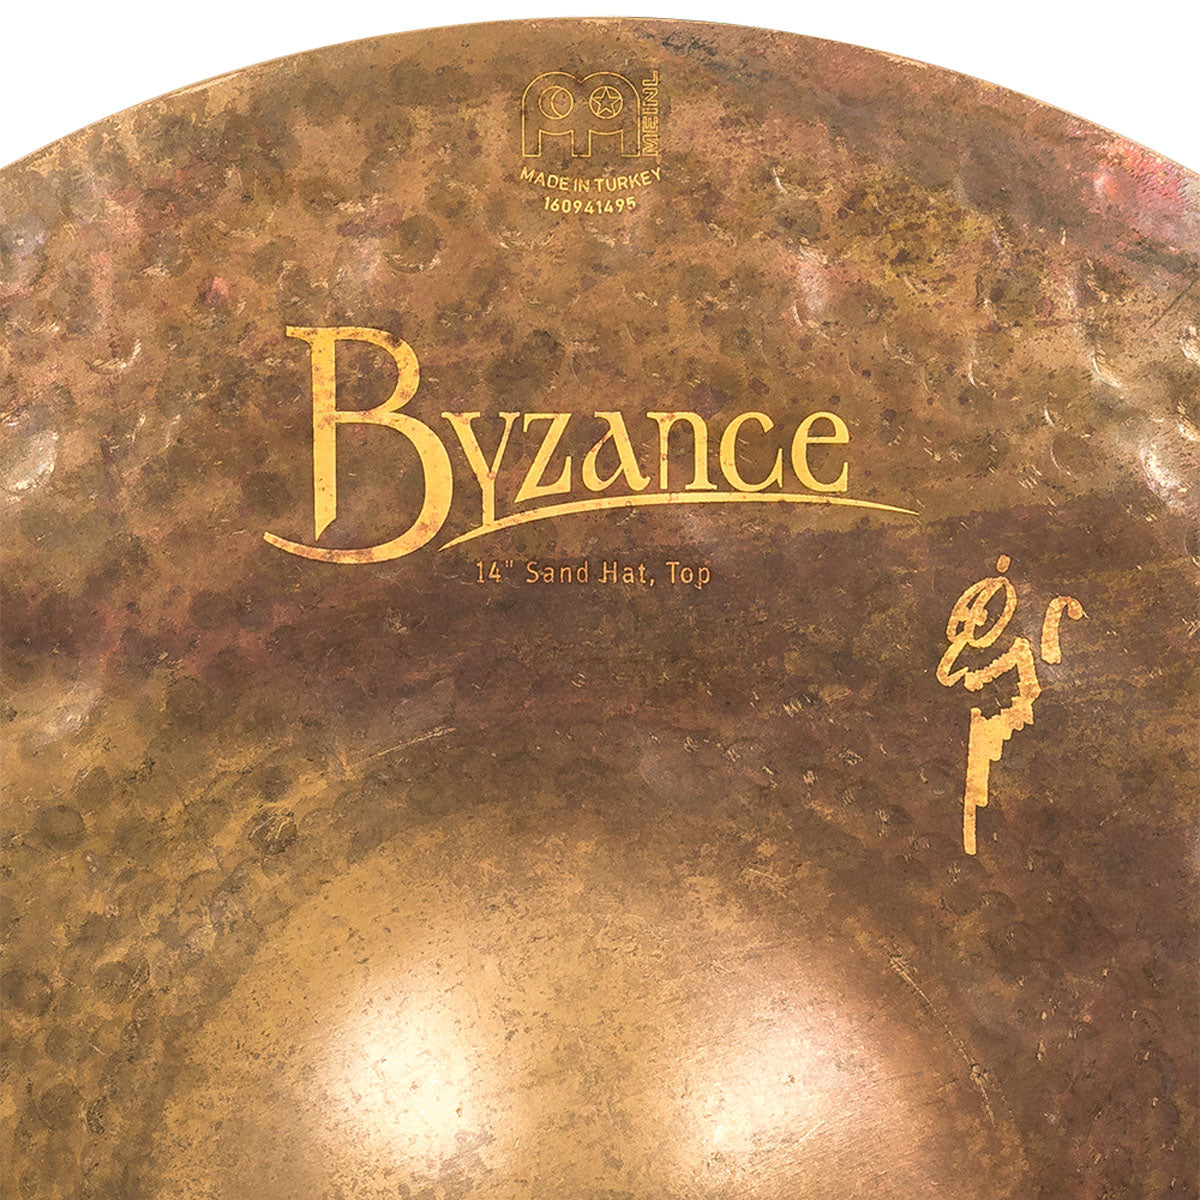 Meinl Byzance Vintage 14" Sand Hi Hat Cymbals